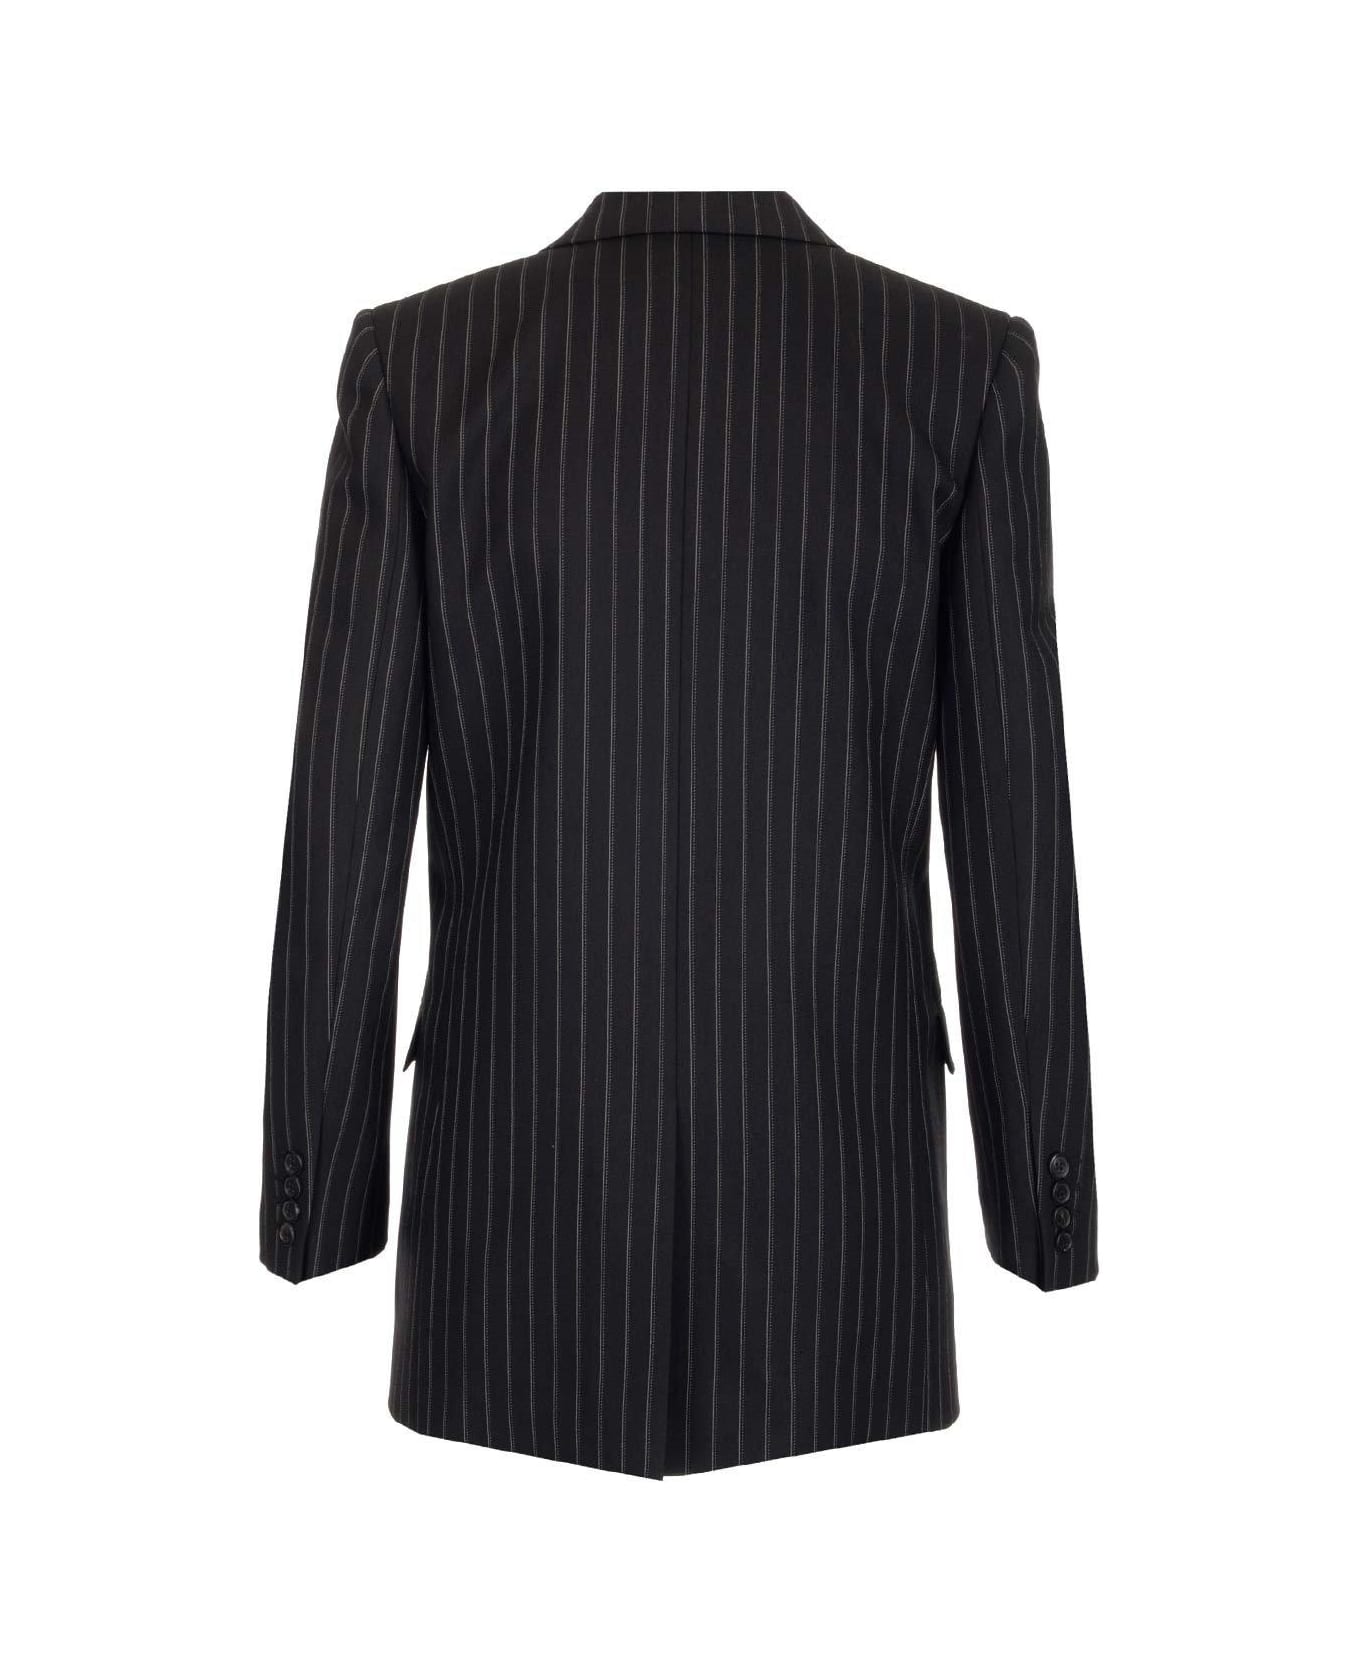 Saint Laurent Pinstripe Tailored Blazer - NOIR CRAIE ブレザー